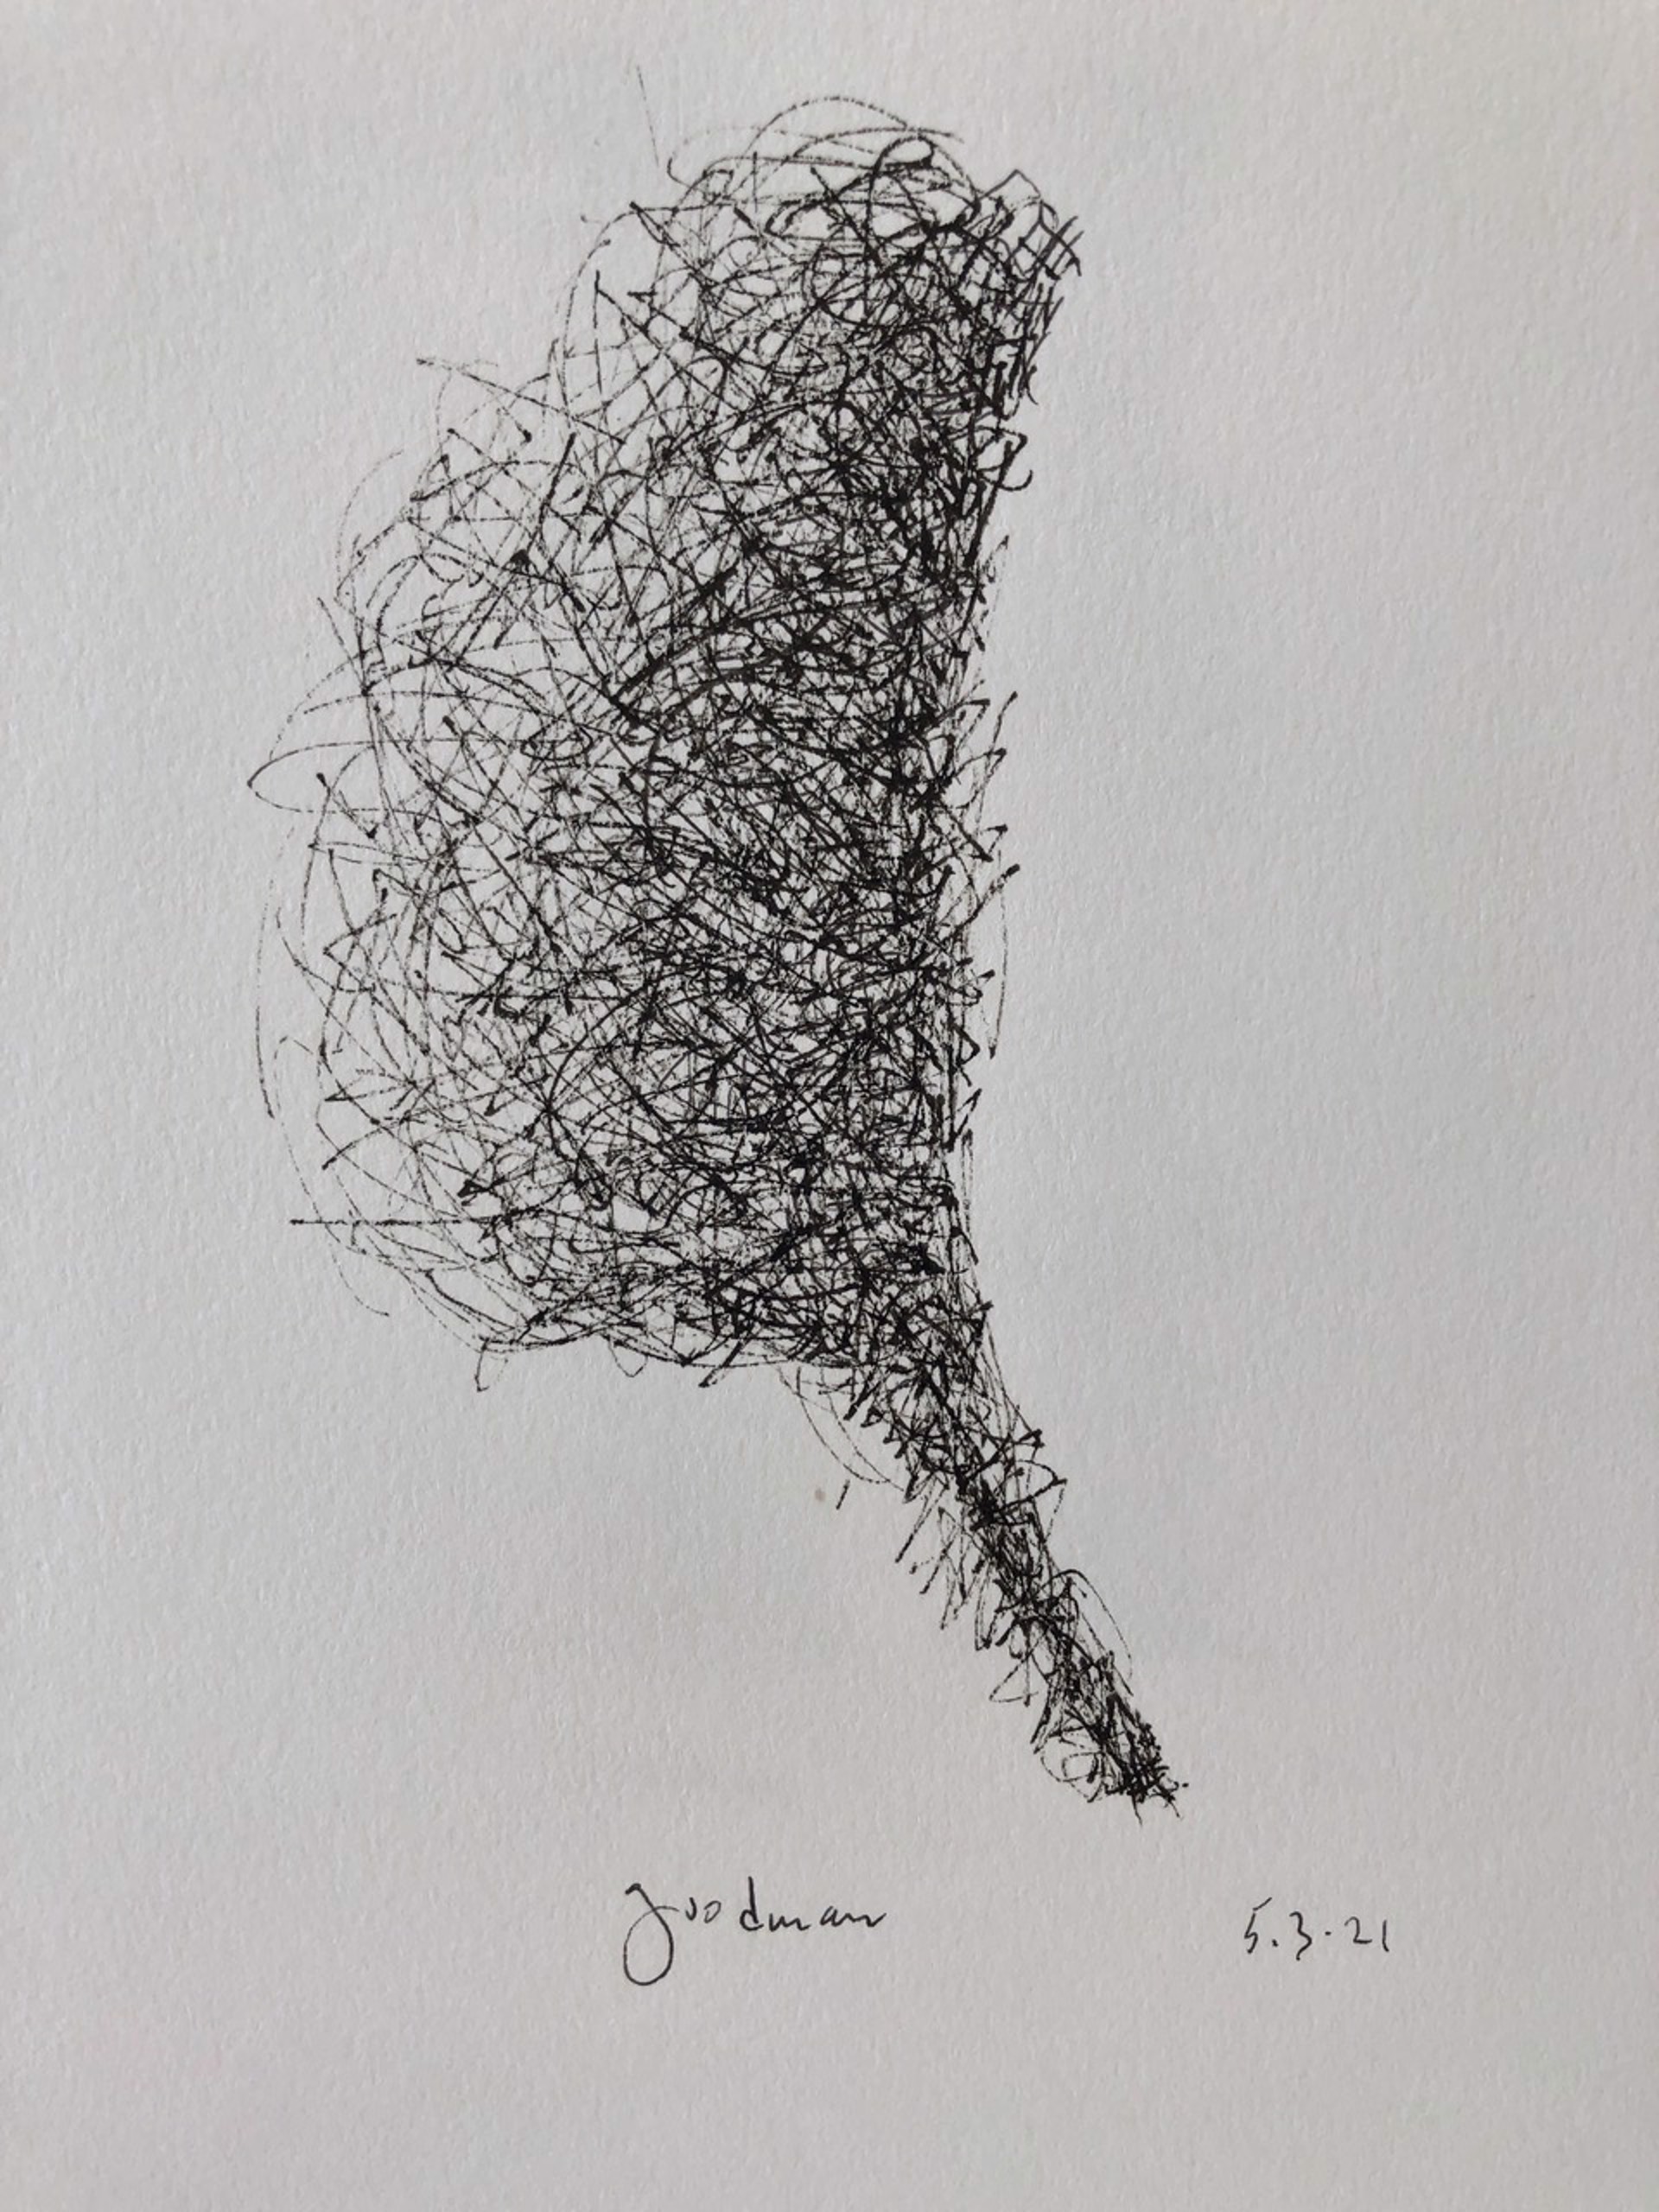 Abstract no.3, 2021 by John Goodman